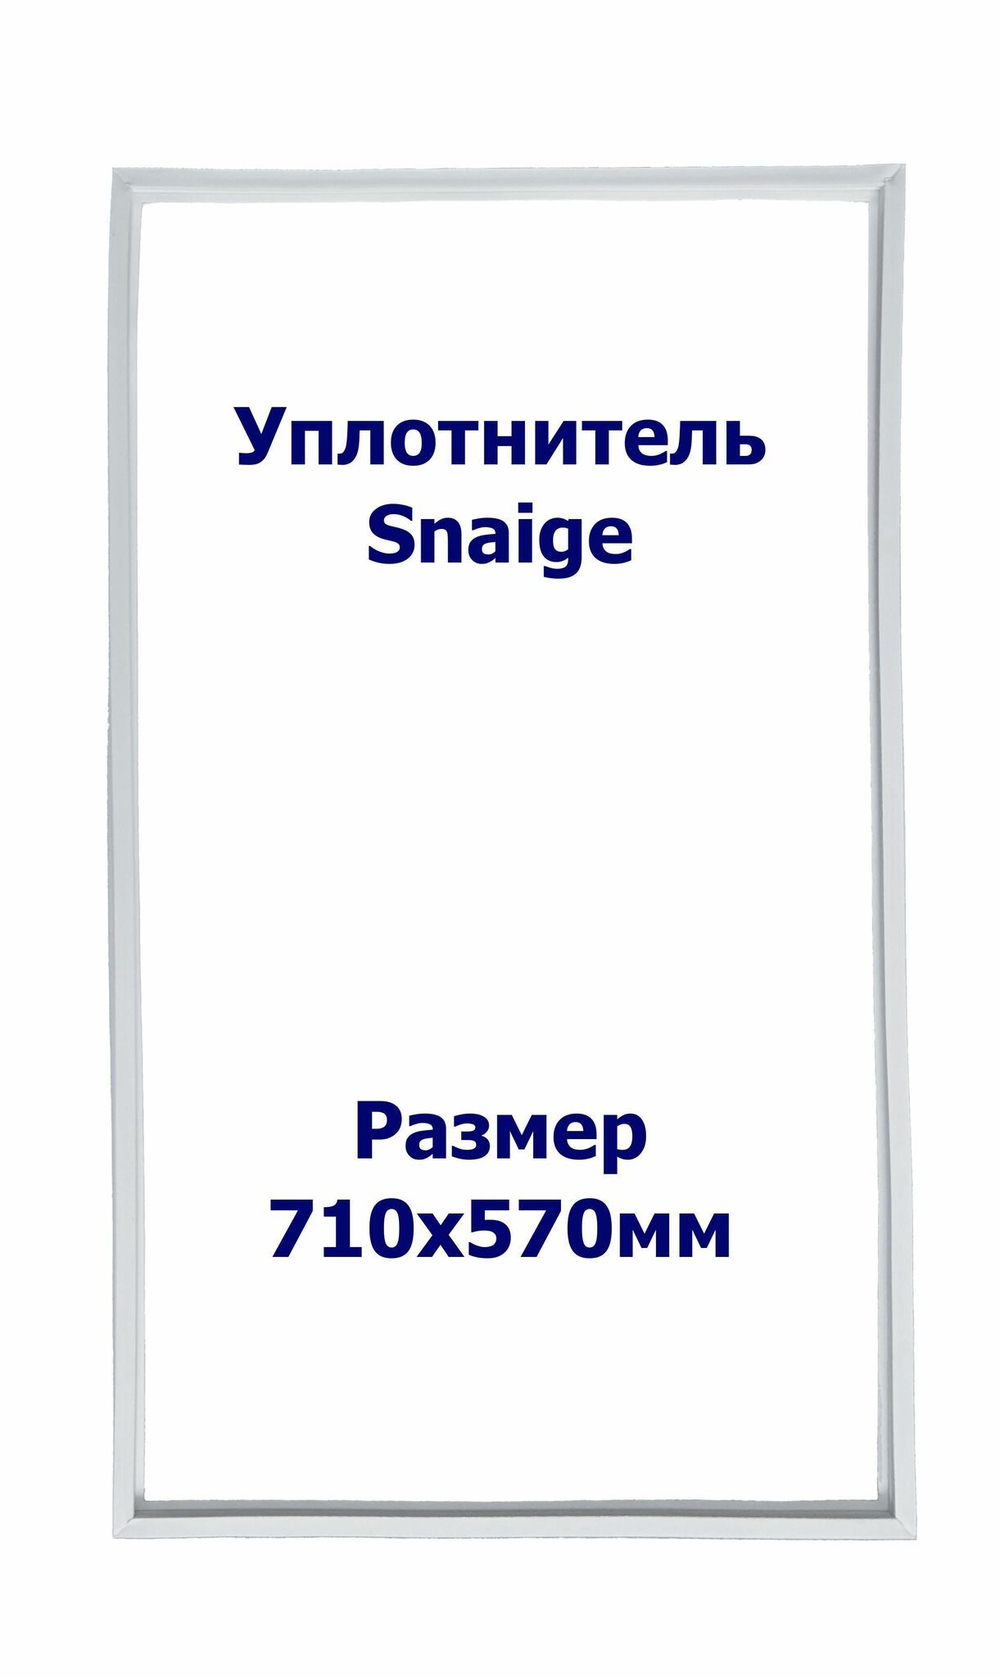 Уплотнитель Snaige RF 34 SM. м.к., Размер - 710x570 мм. SK